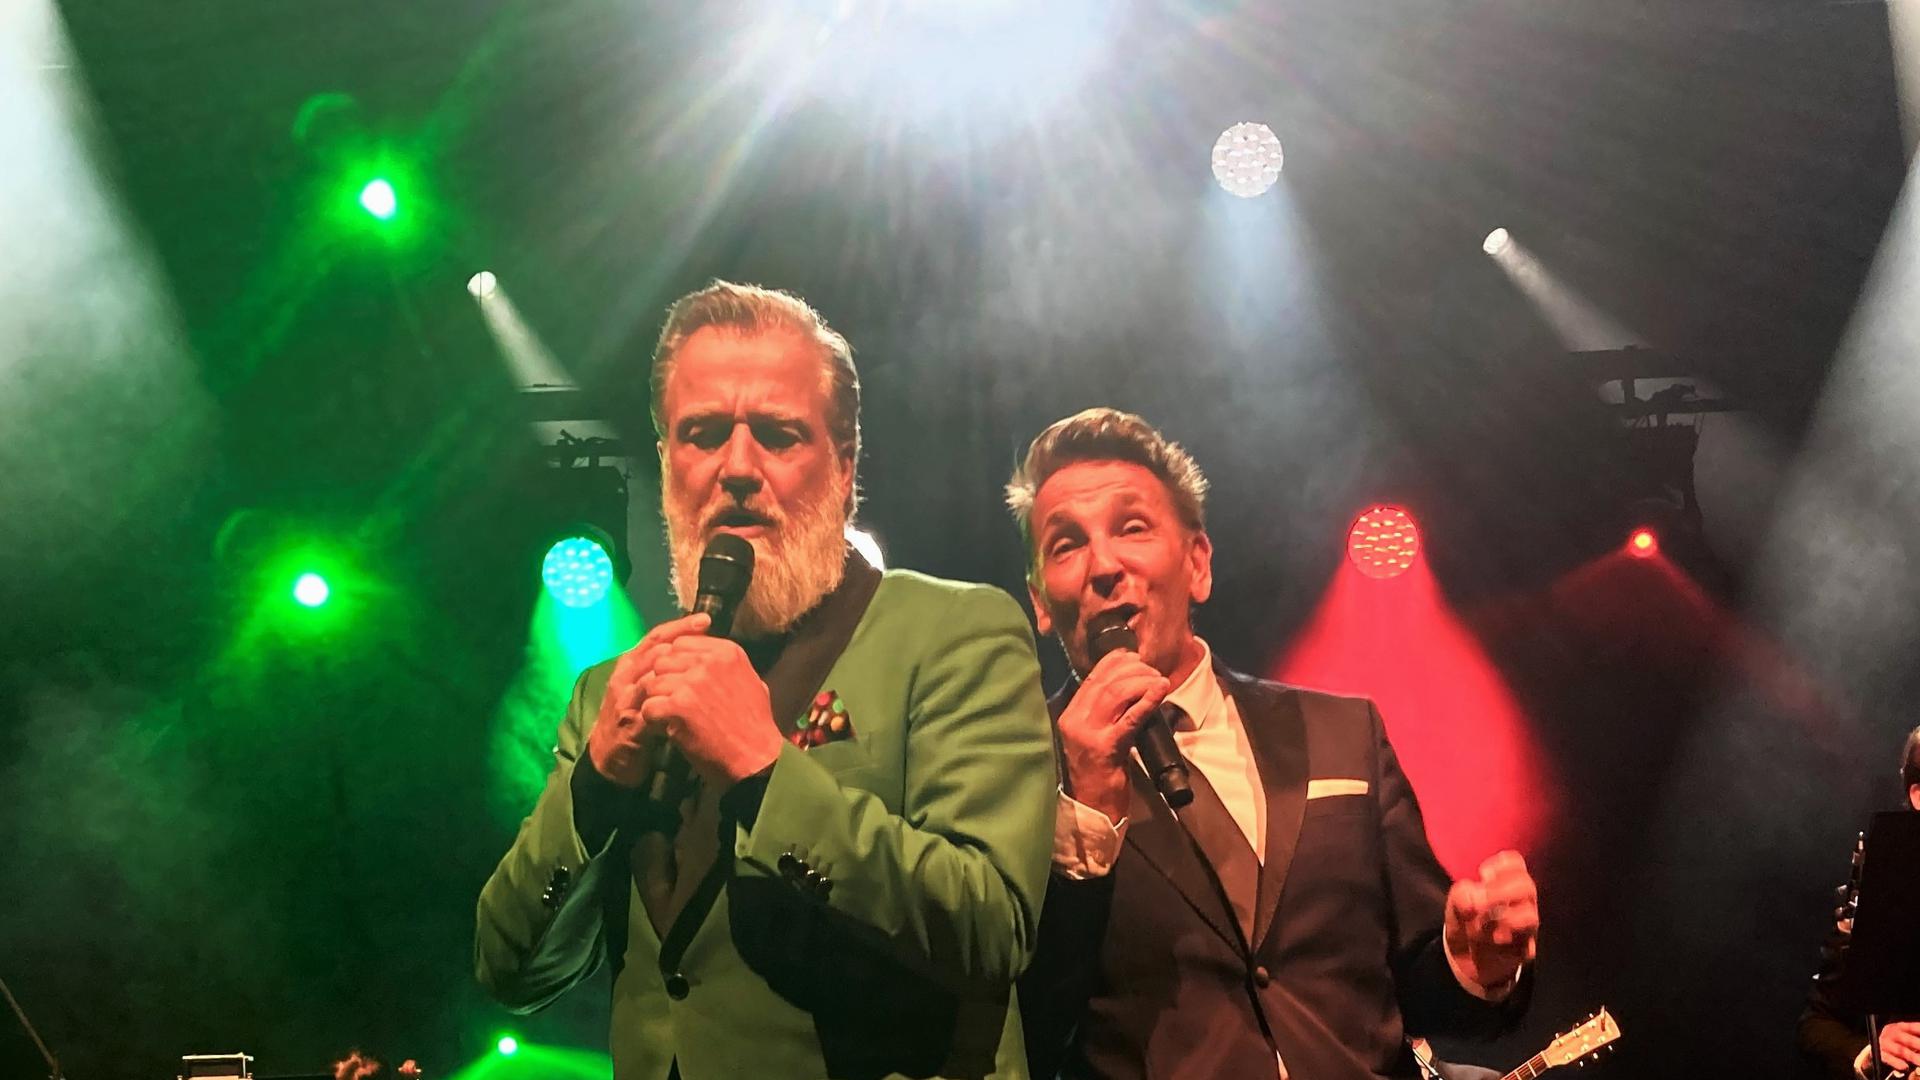 Sänger Marc Marshall (links) und der Schauspieler Mark Keller, bekannt als Dr. Alexander Kahnweiler aus der TV-Serie „Der Bergdoktor“, stehen in Baden-Baden gemeinsam auf der Bühne. 